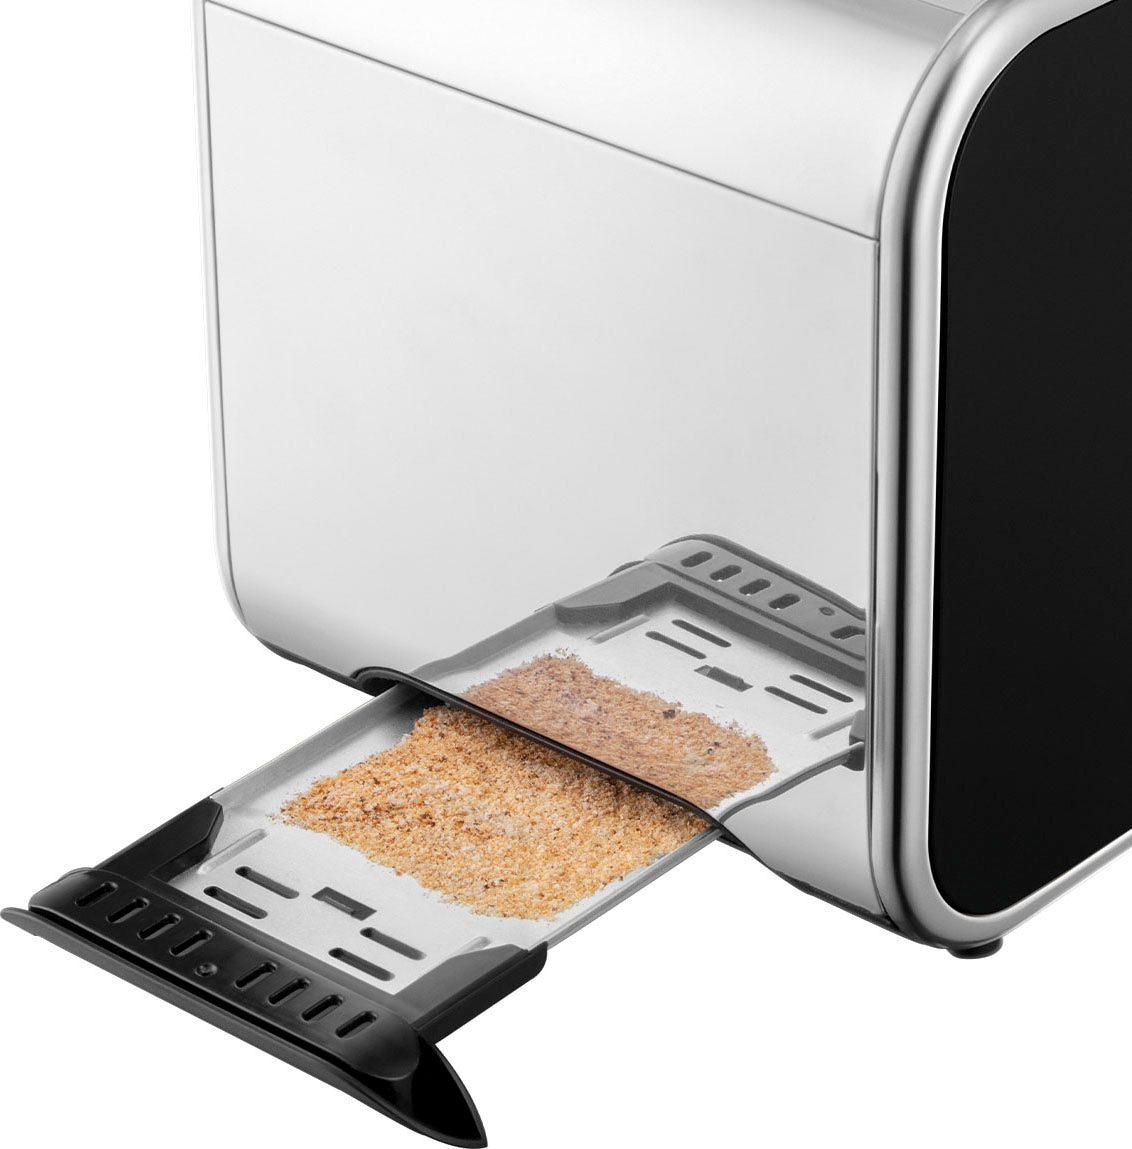 RUSSELL HOBBS Toaster »Distinctions Schwarz 26430-56«, 2 kurze Schlitze, für 2 Scheiben, 1600 W